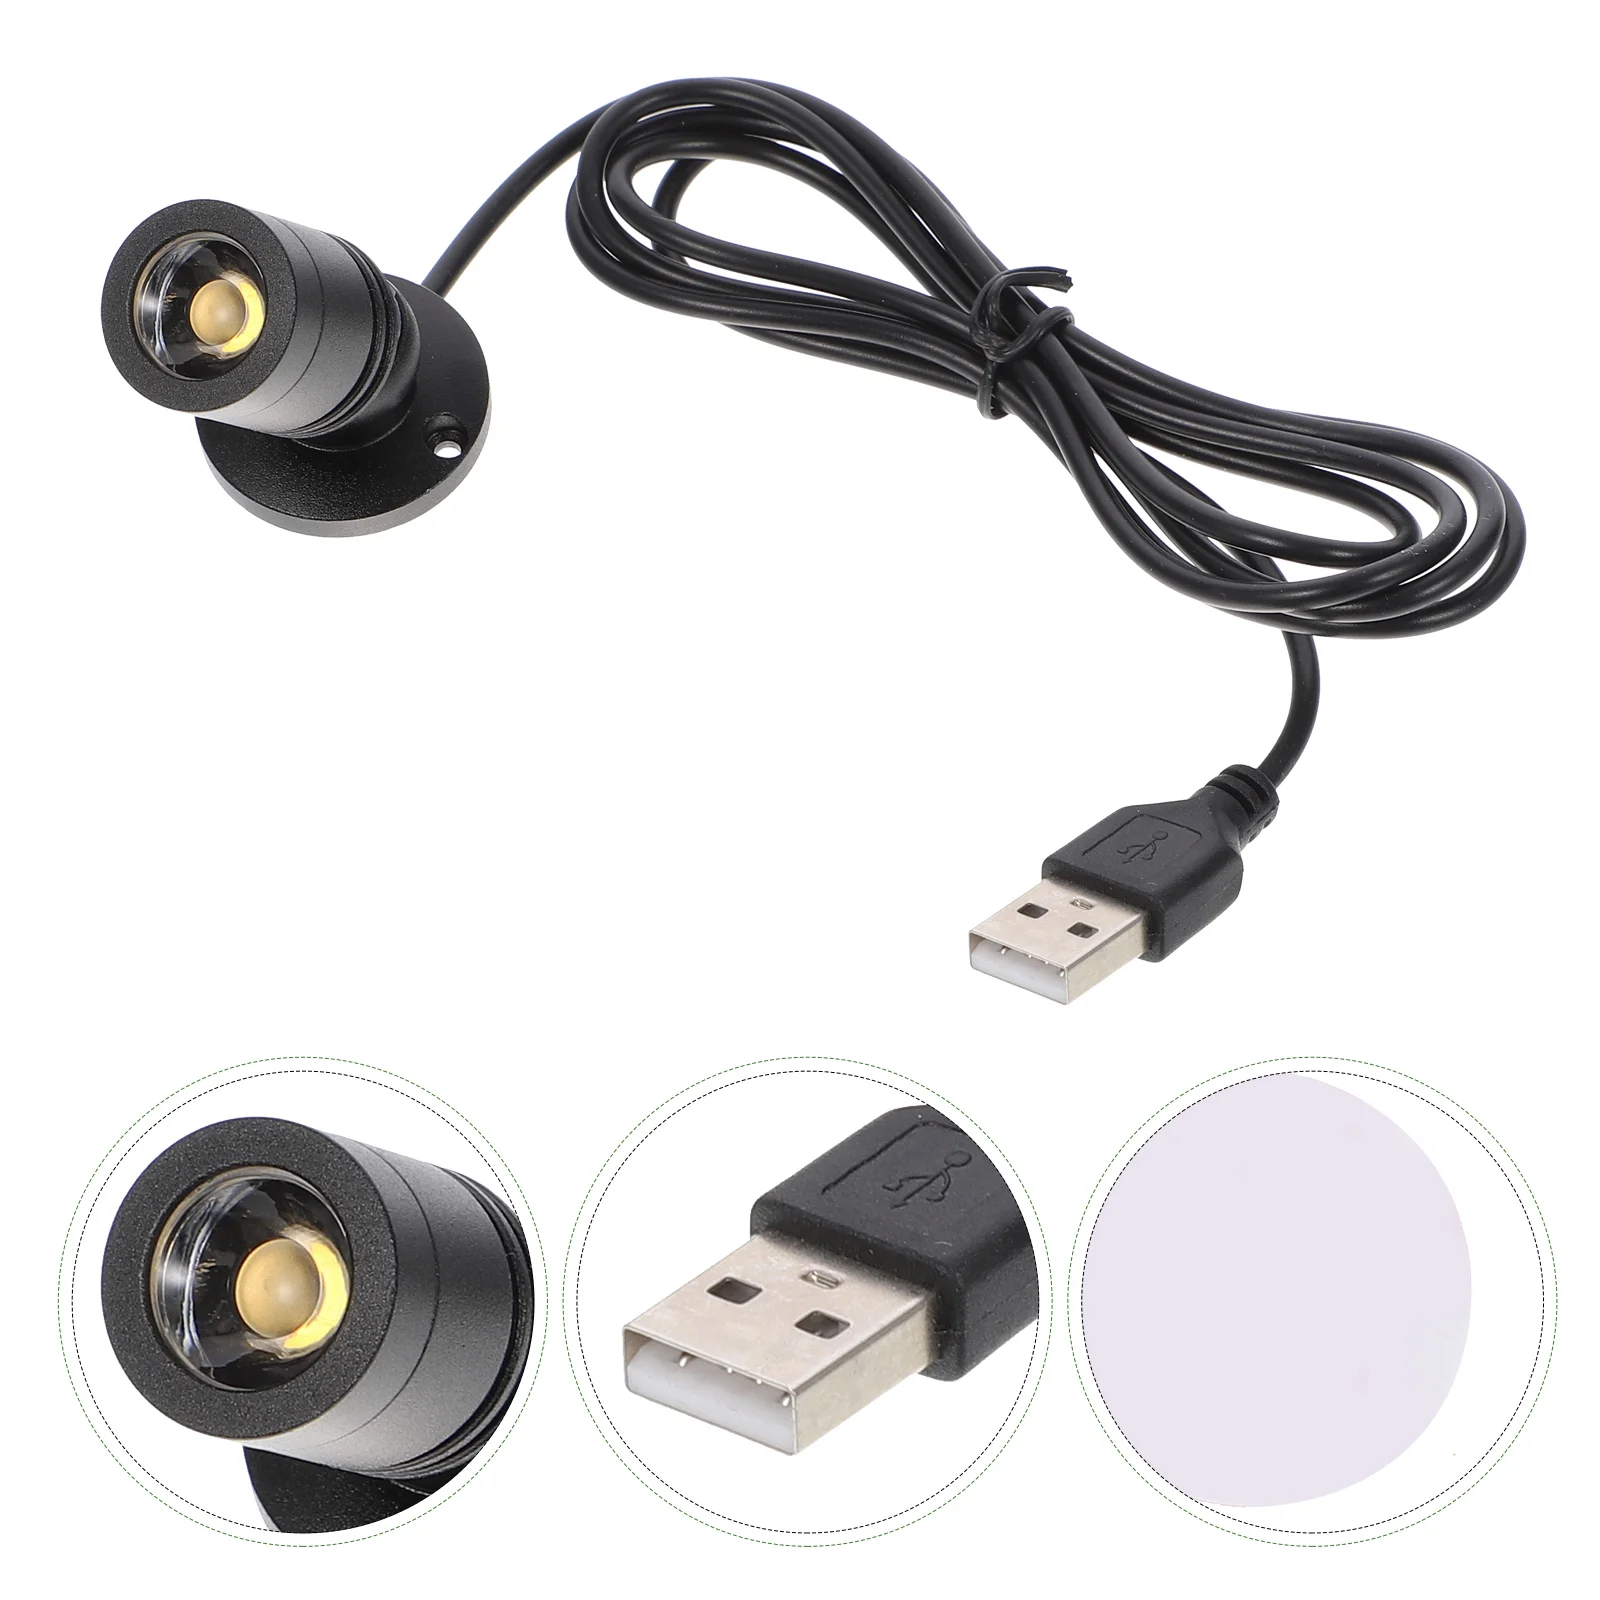 USB-небольшой прожектор под шкафом Для ювелирных изделий со светодиодным дисплеем с питанием от USB, мебель-холодильник